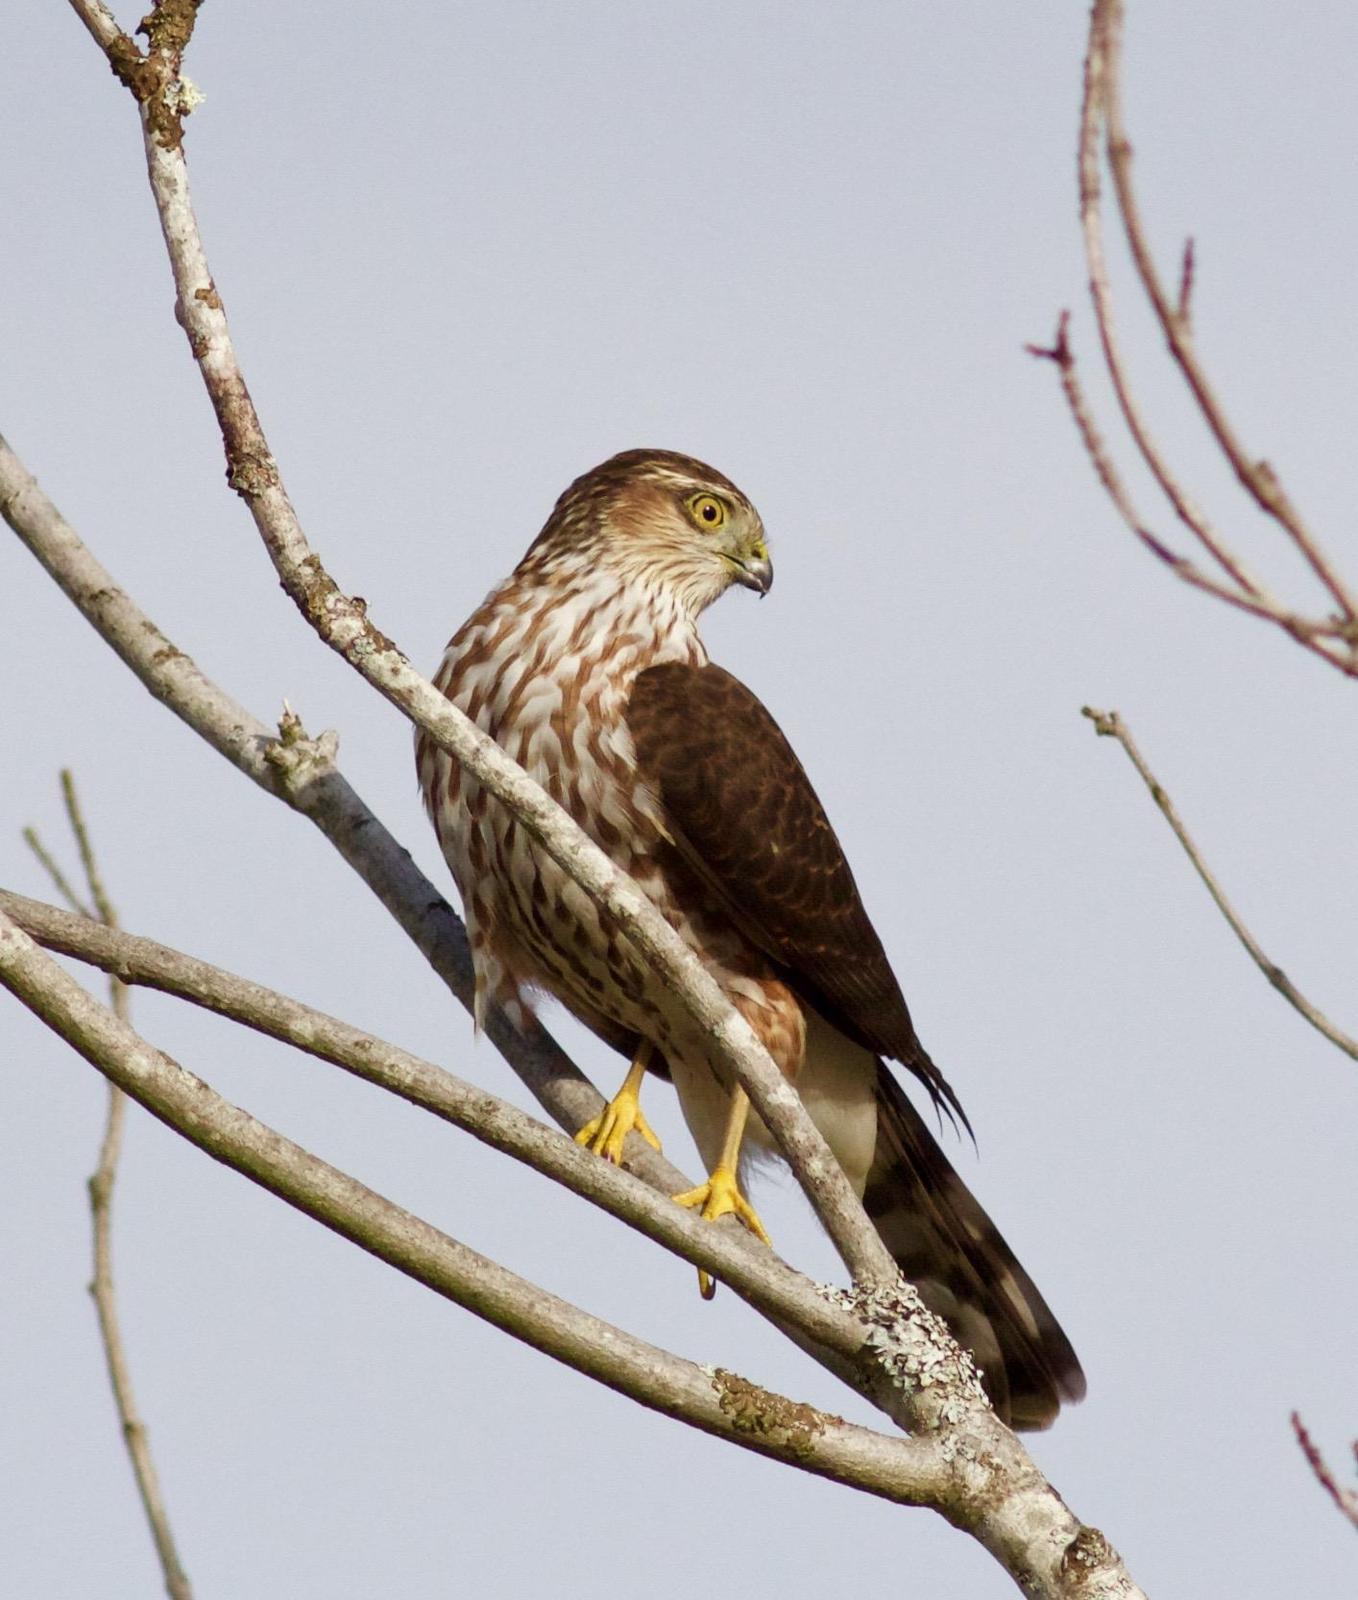 Sharp-shinned Hawk Photo by Kathryn Keith